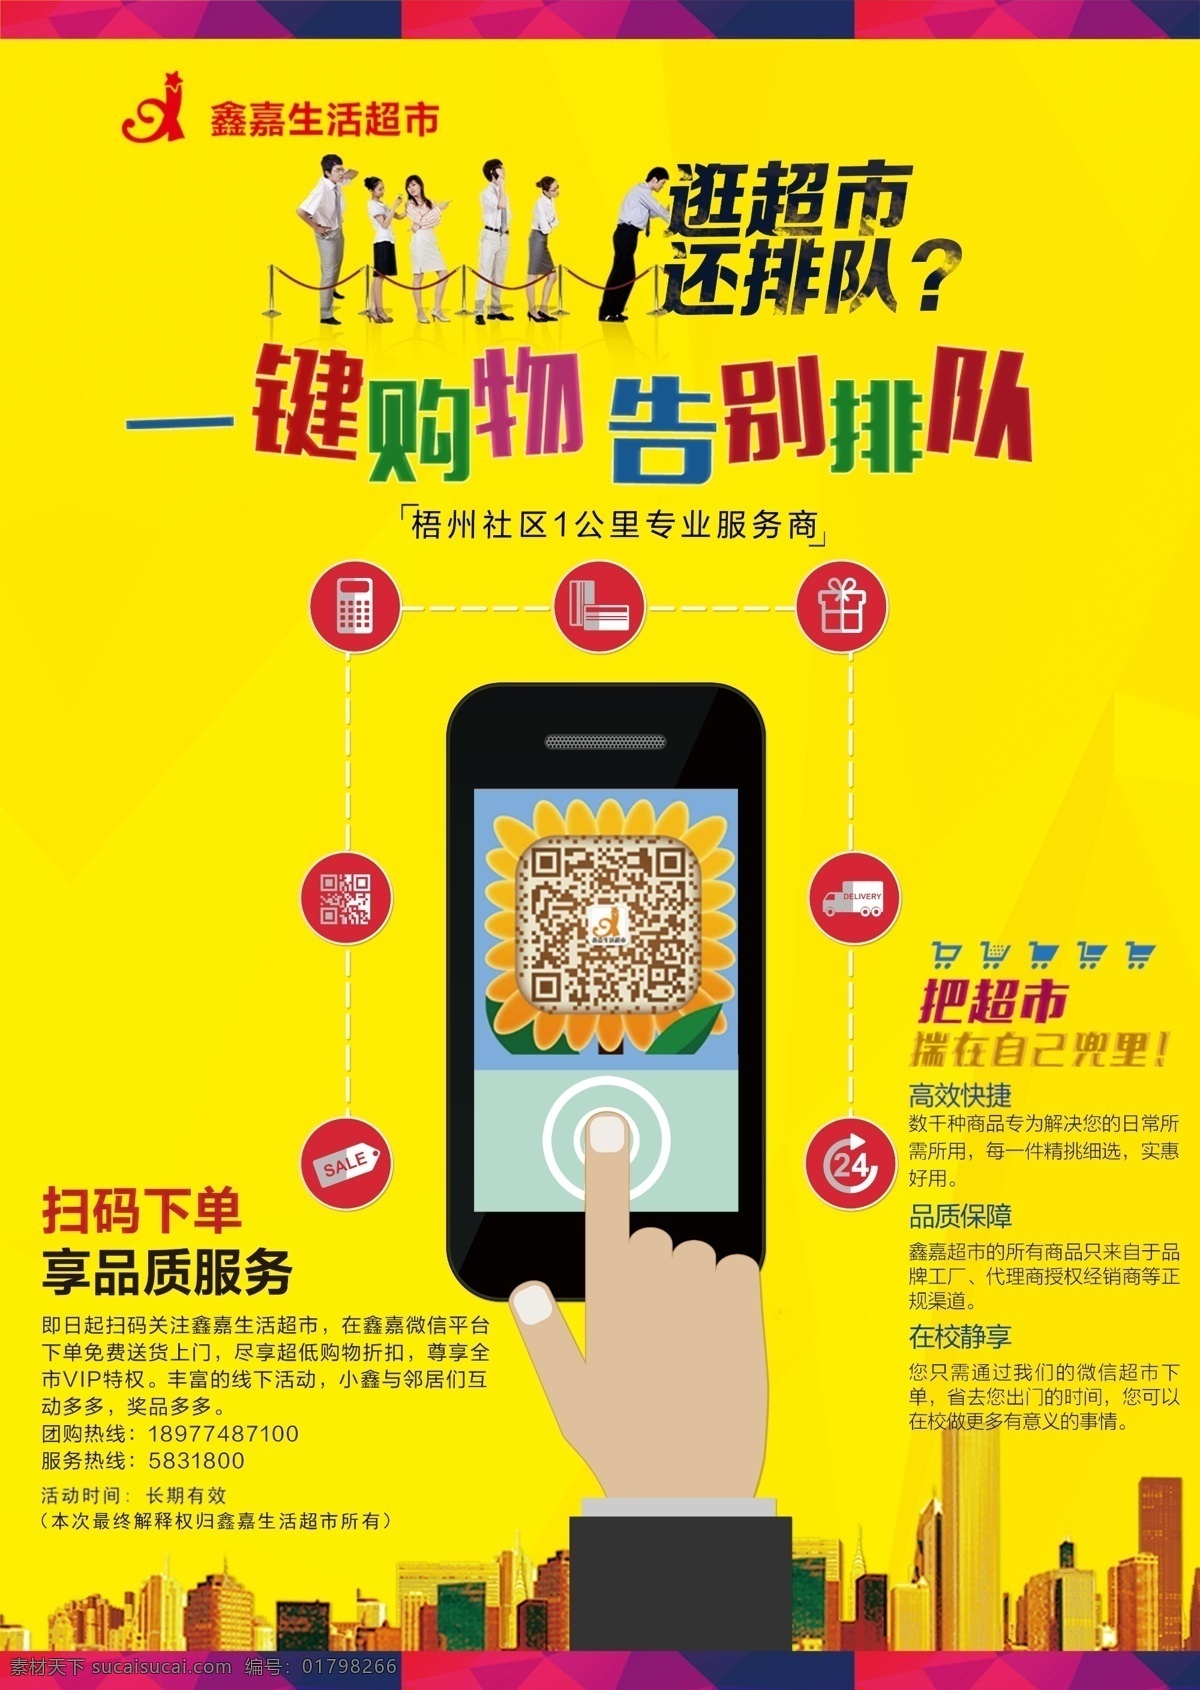 一键购物图片 一键购物 海报 宣传 广告 超市 活动 鑫嘉超市